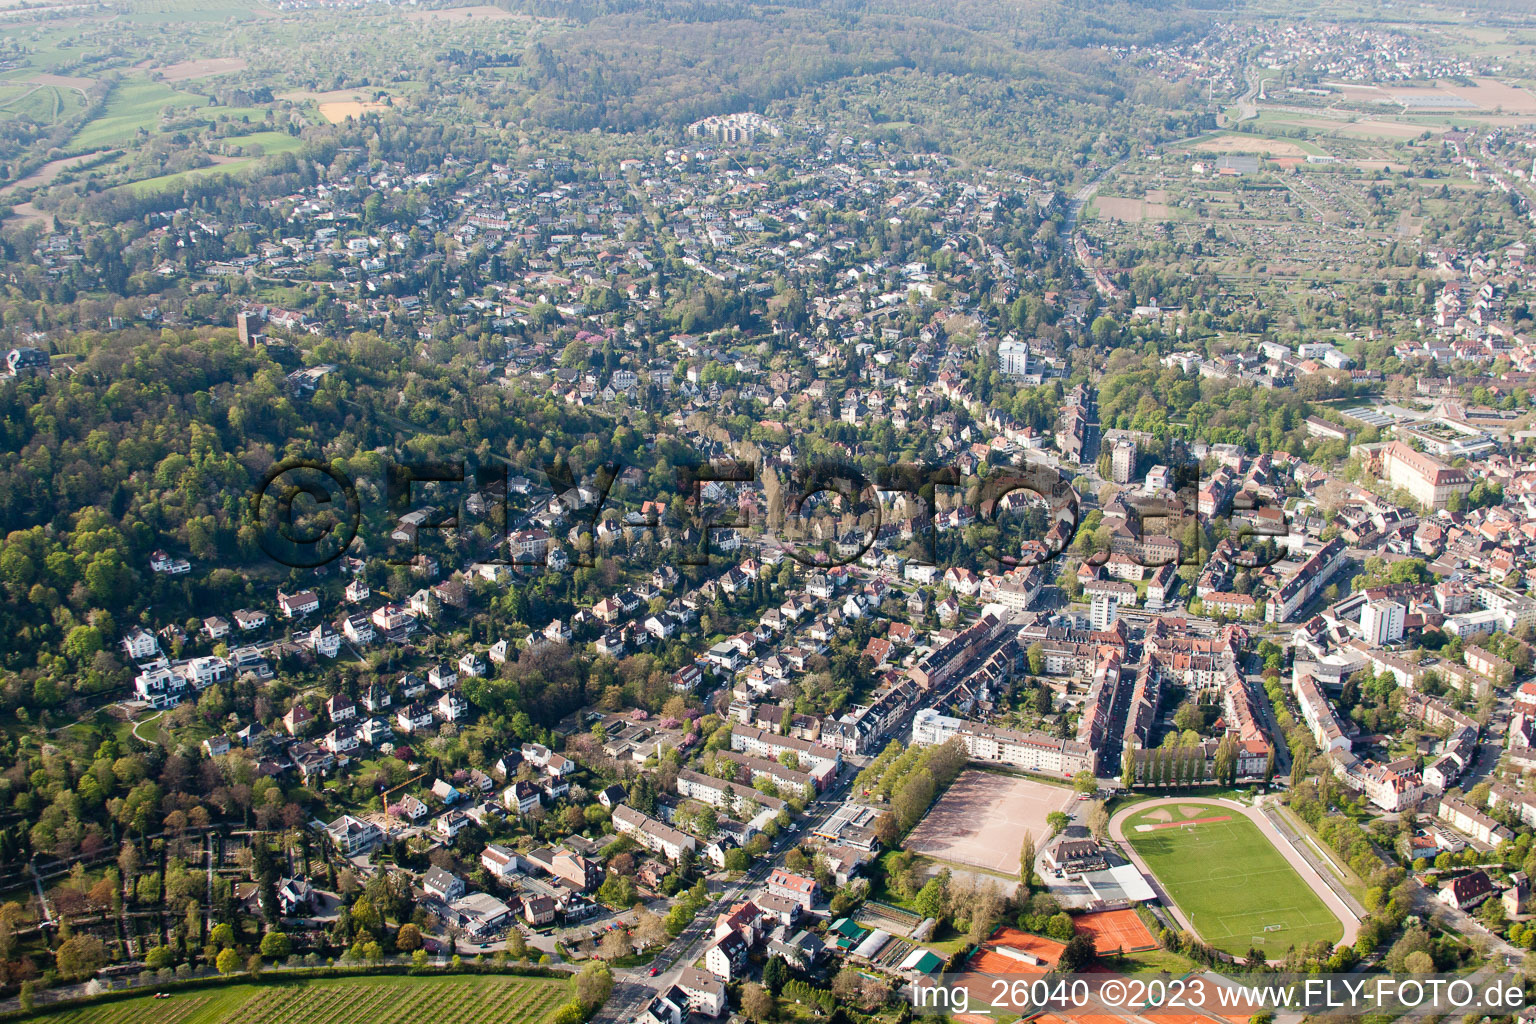 Photographie aérienne de Montagne de la Tour à le quartier Durlach in Karlsruhe dans le département Bade-Wurtemberg, Allemagne